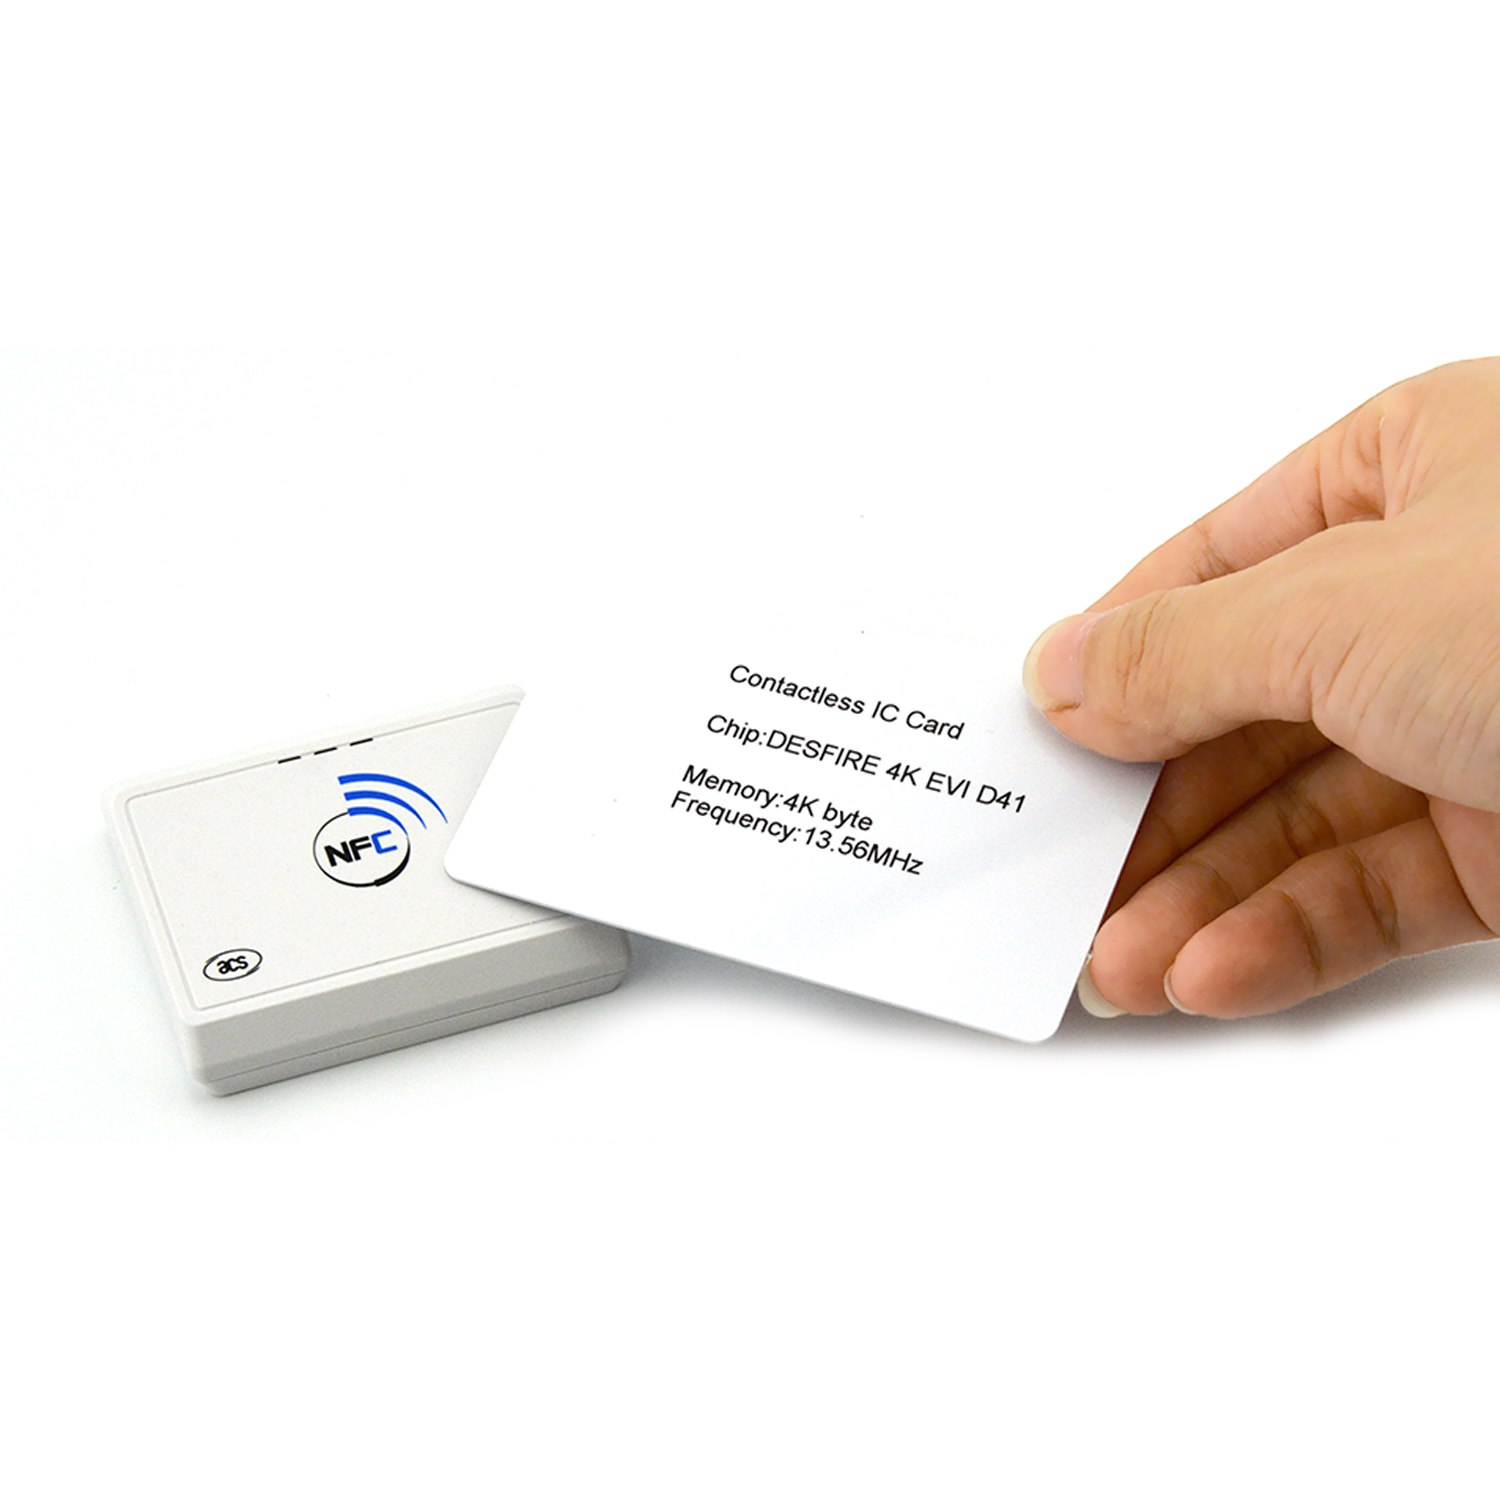 非接触式蓝牙 RFID 13.56 MHz NFC 智能卡读写器 ACR1311U-N2